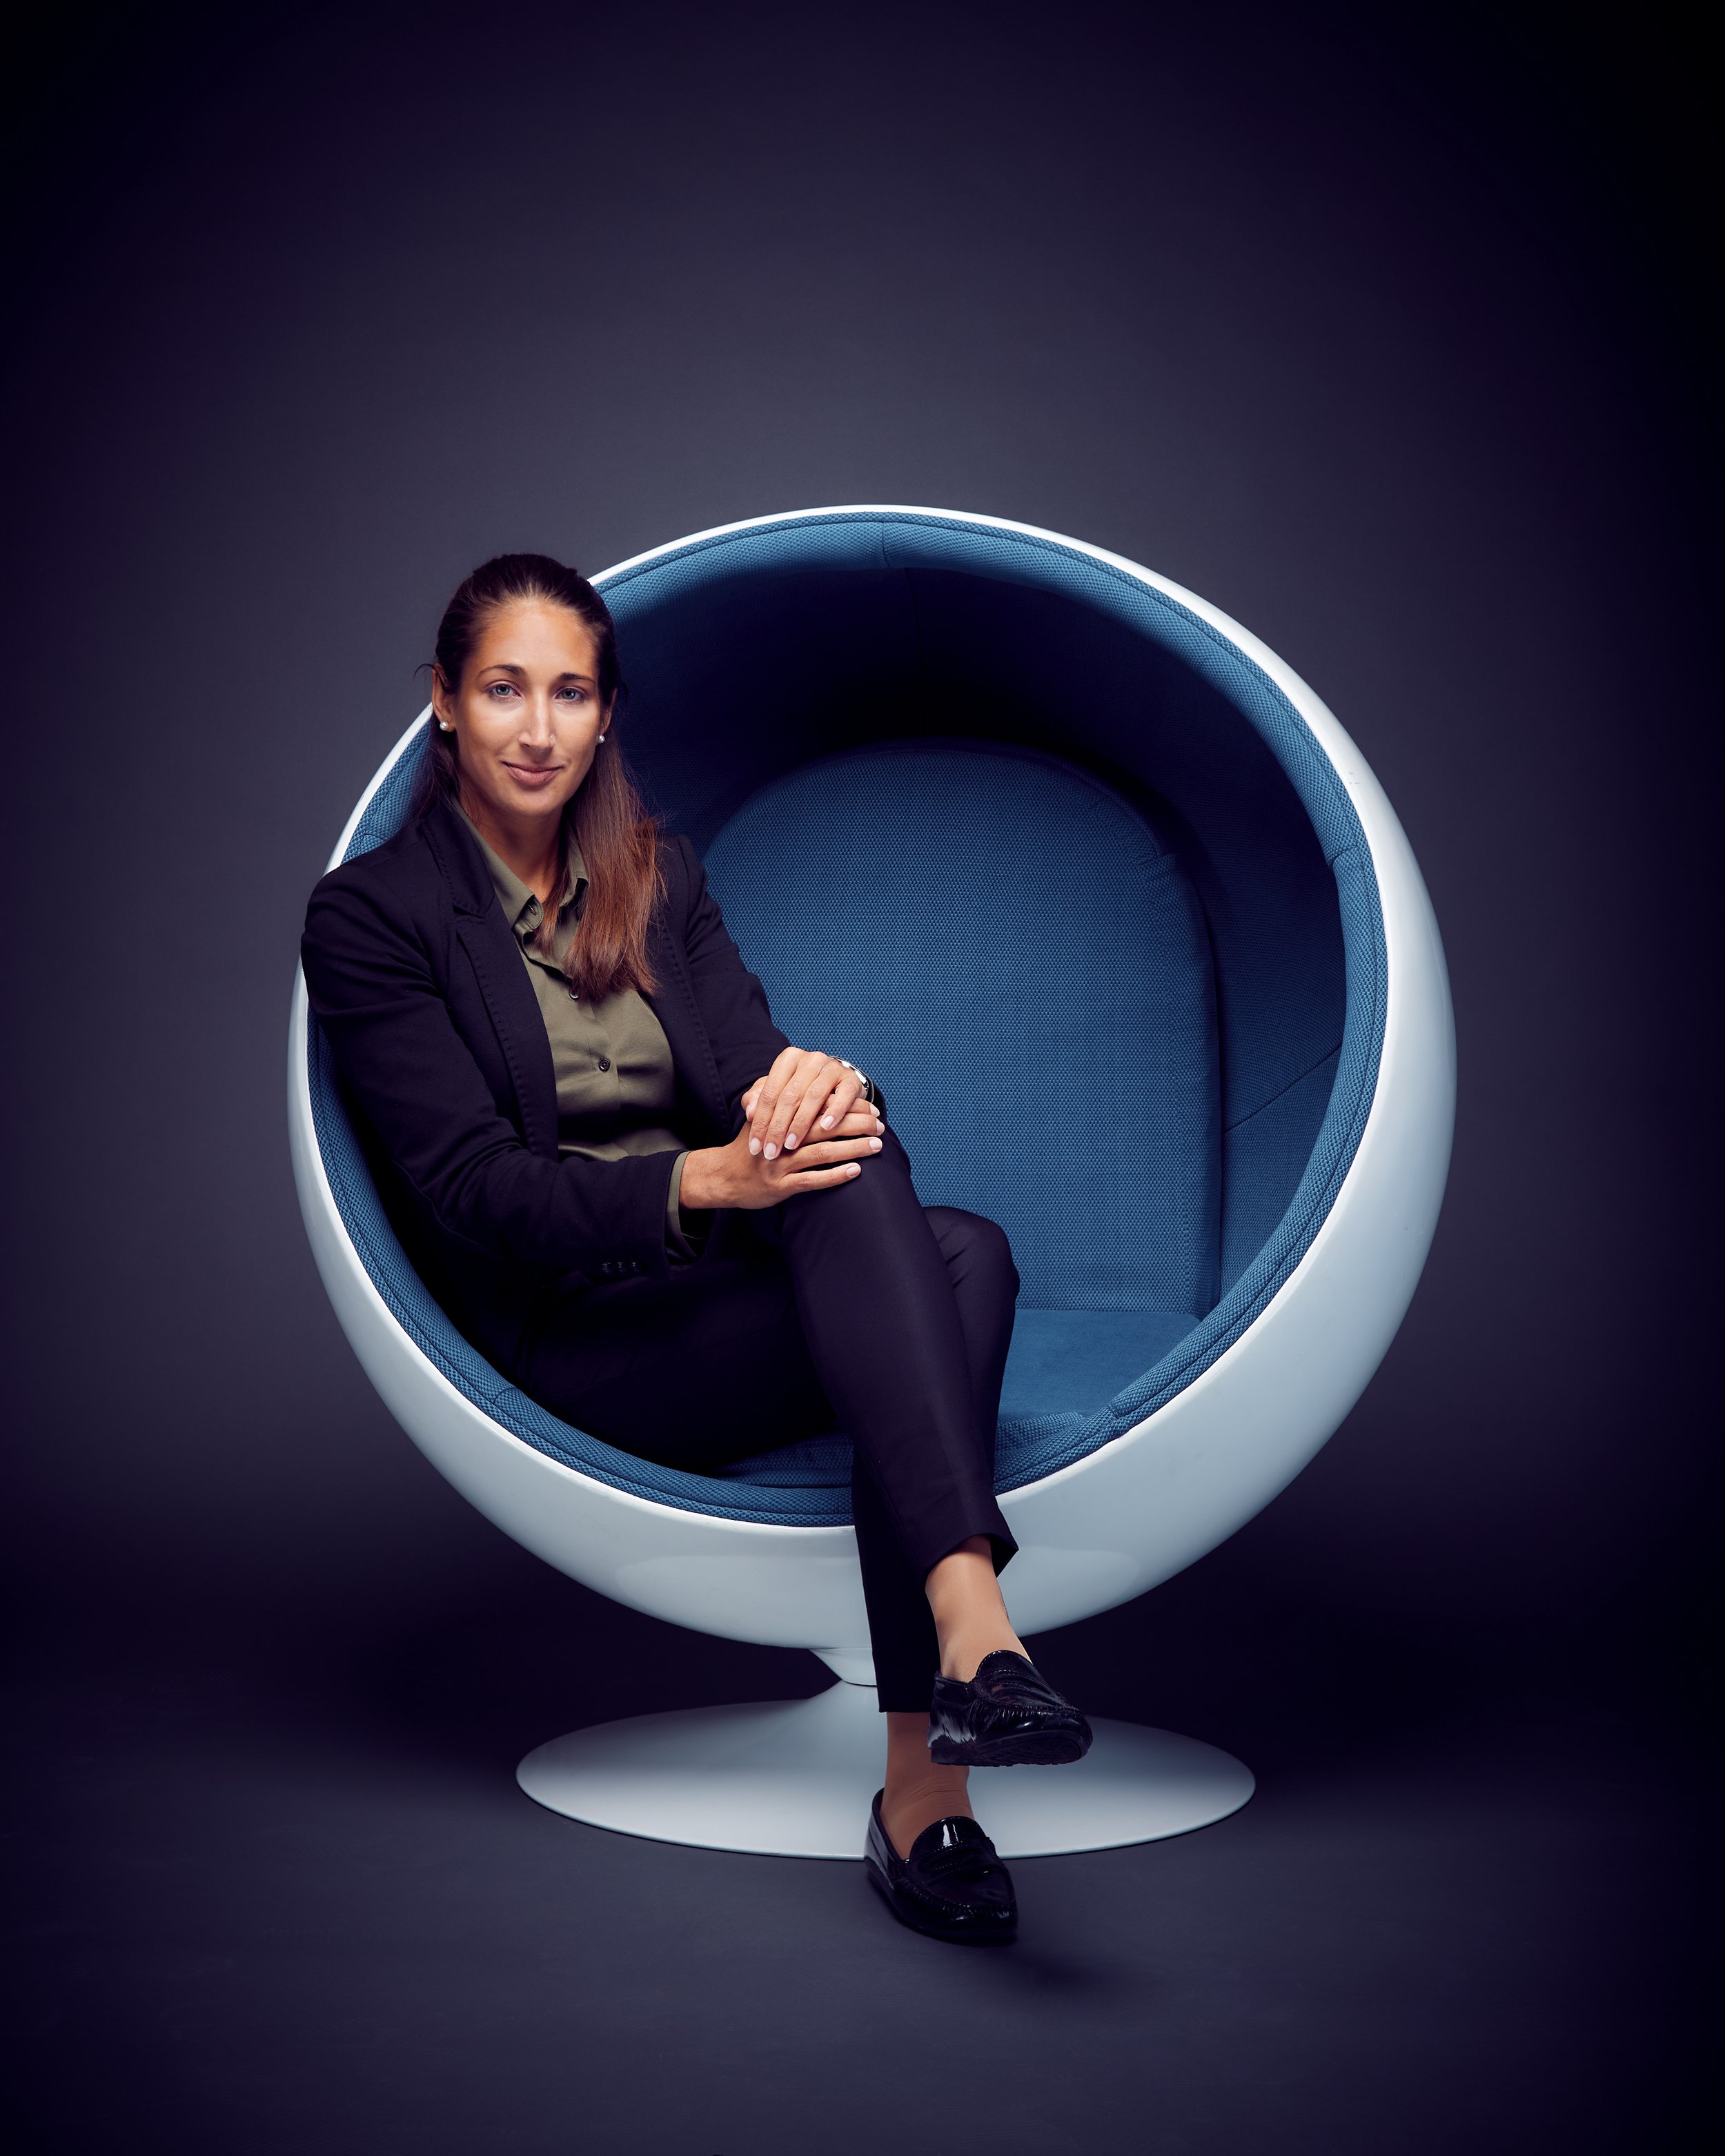 Vivien Jane, CEO der Acquila Gruppe, fotografiert von Jürg Kaufmann für das Sphere Magzine